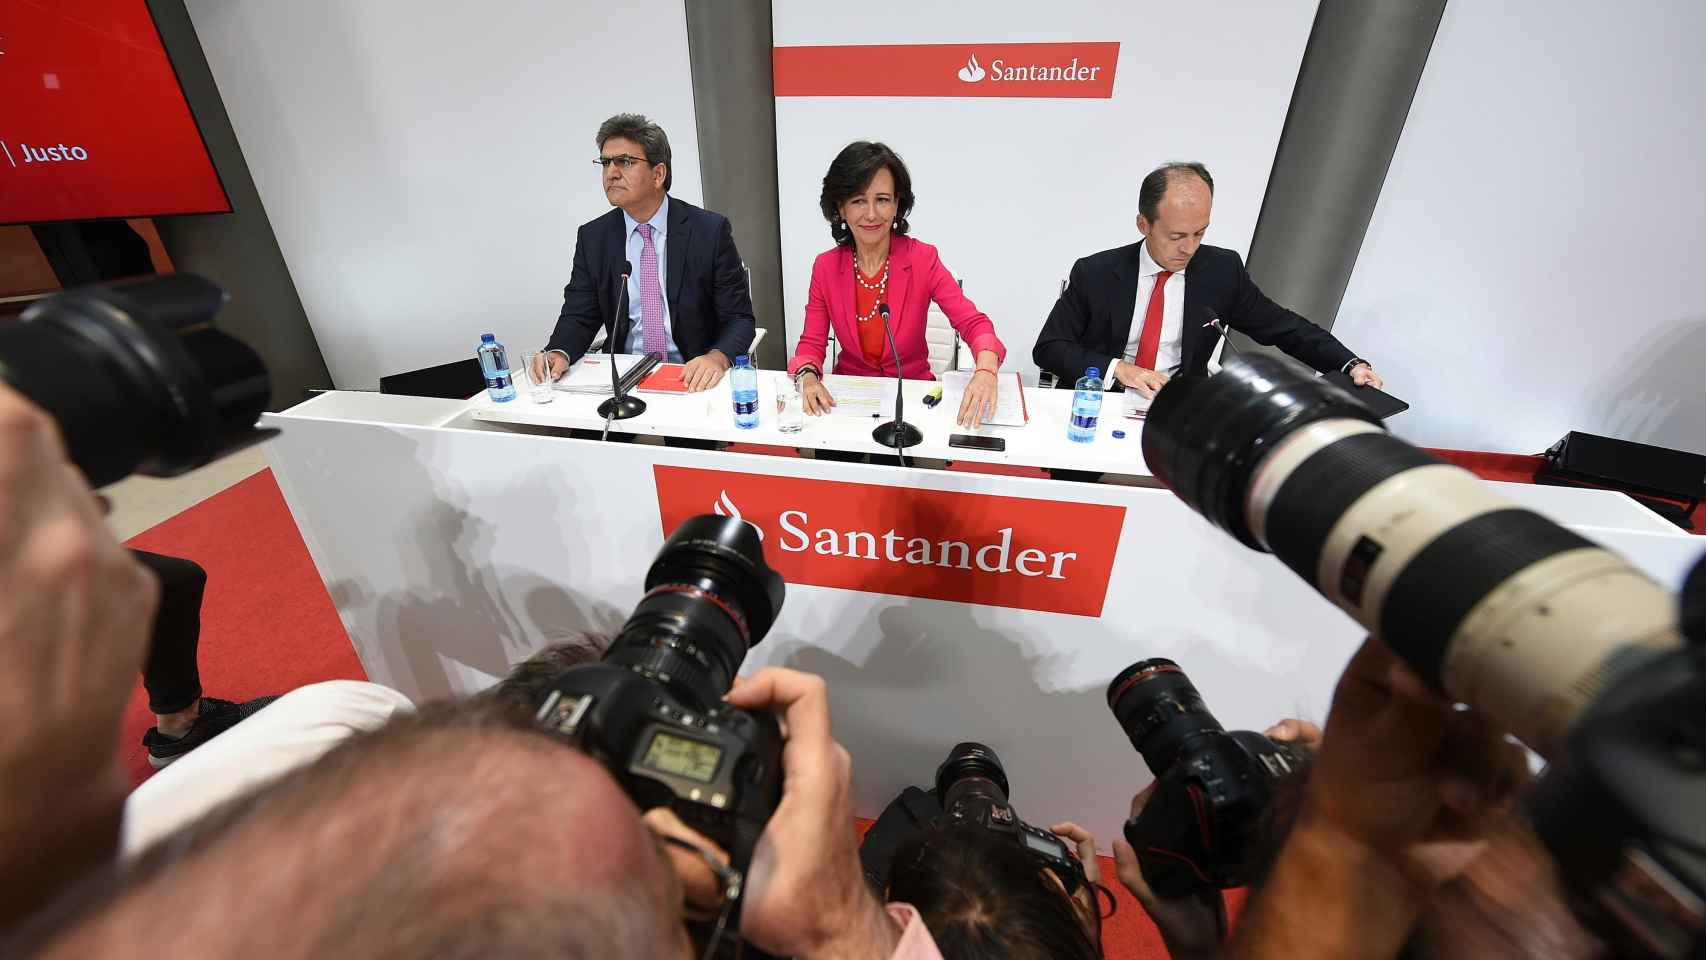 La presidenta del Banco Santander, Ana Patricia Botín, junto al CEO de la entidad, José Antonio Álvarez y el CEO de Santander España, Rami Aboukhair, el día en el que se anuncia la compra del Popular.